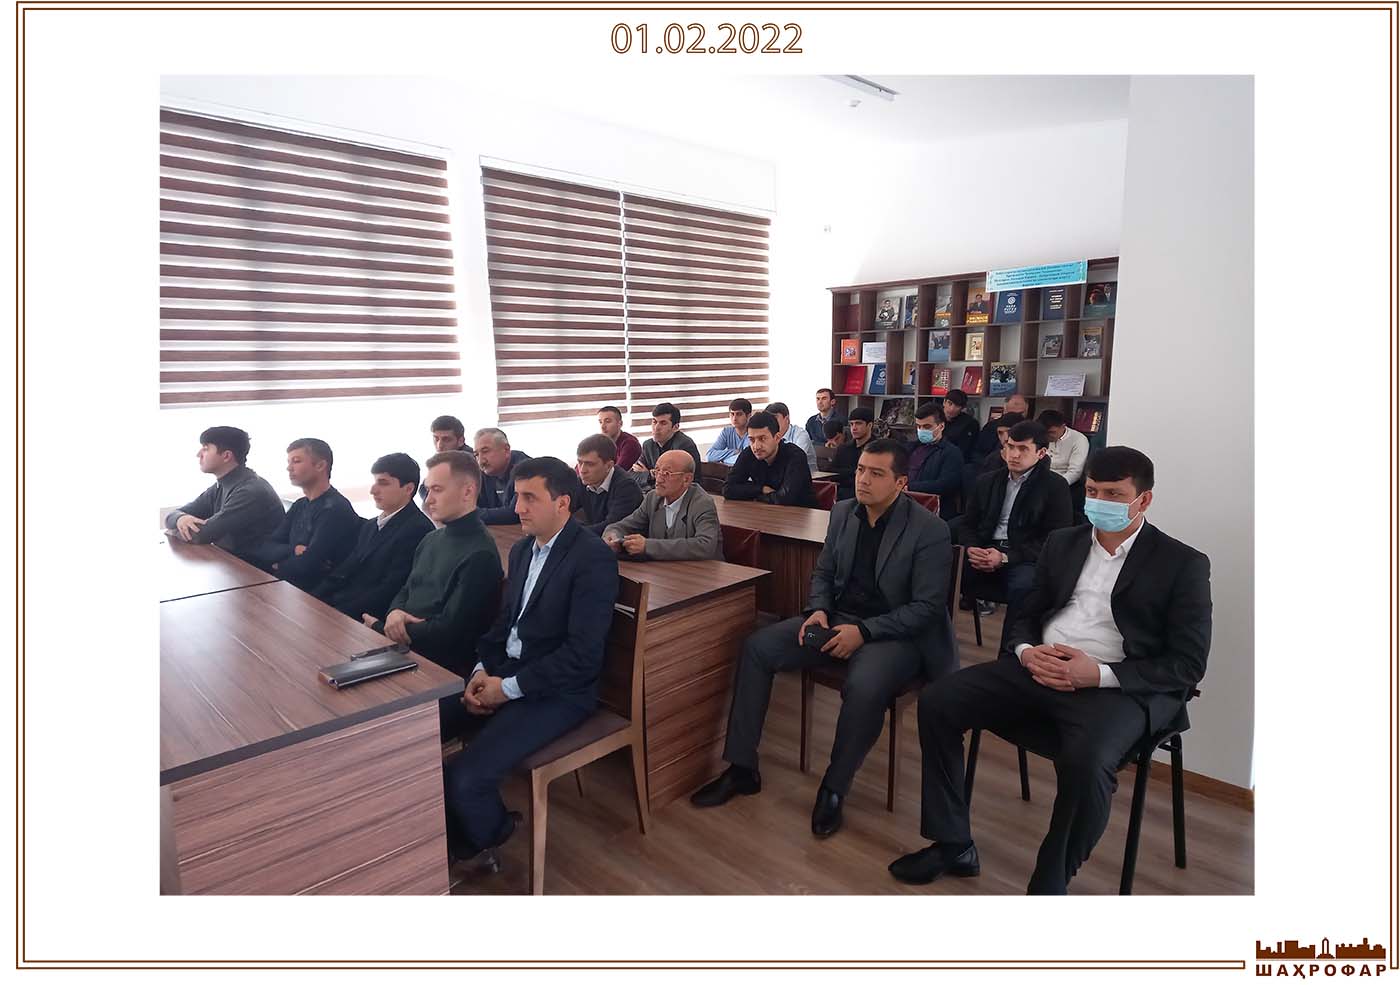 Подробнее о статье Собрания о планах по архитектуре и развитию Республики Таджикистан в ОАО «Шахрофар».